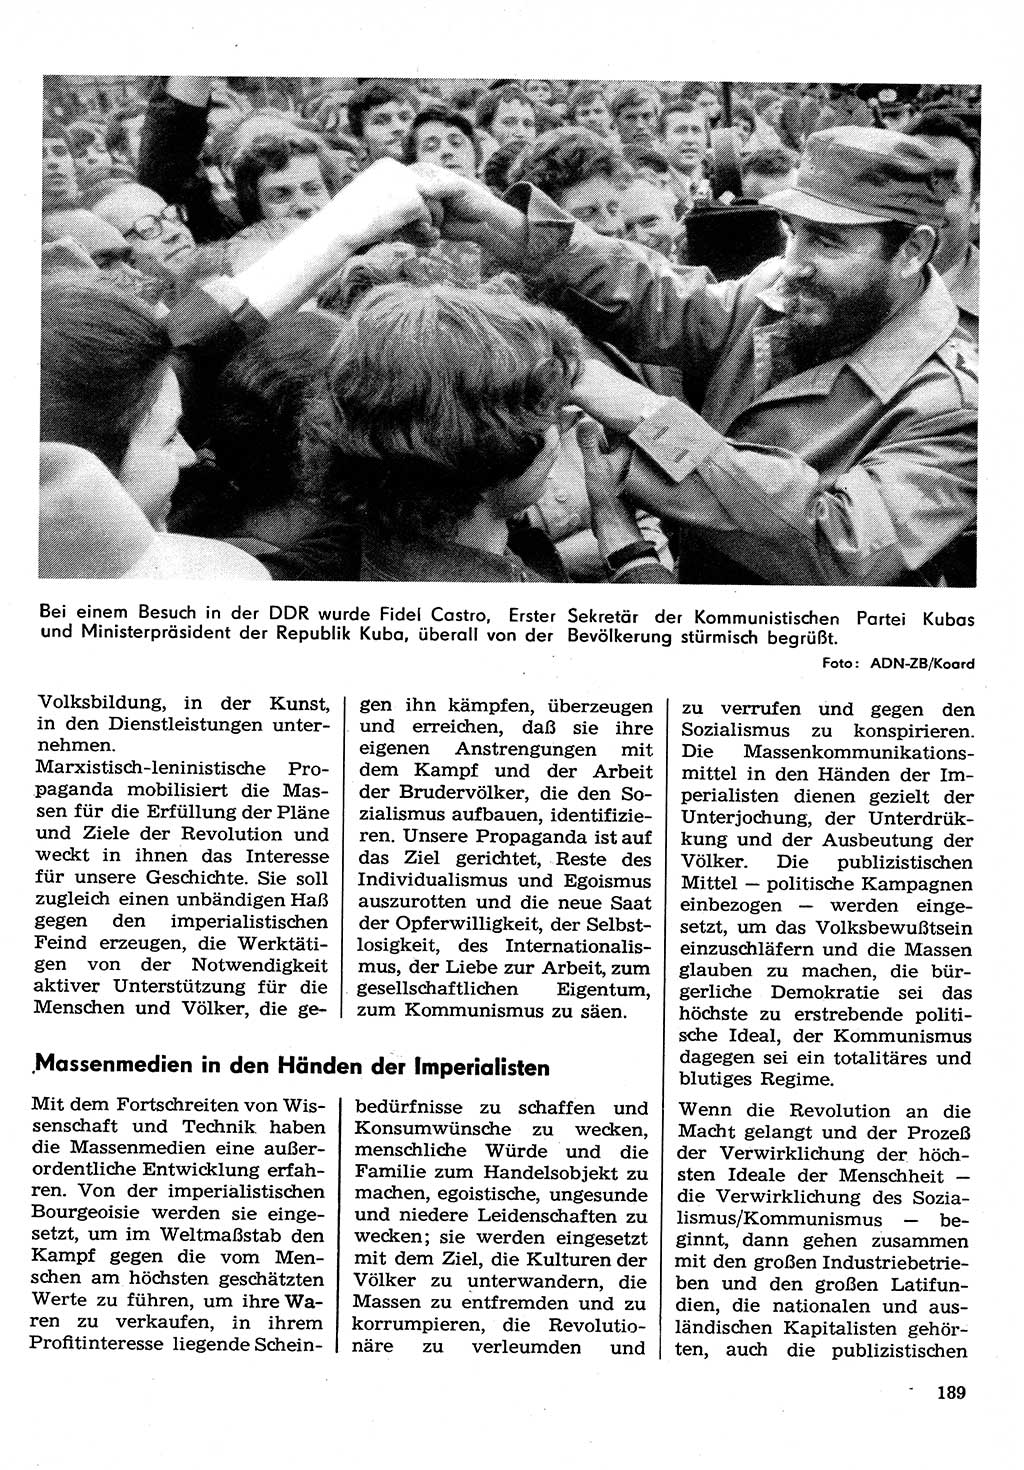 Neuer Weg (NW), Organ des Zentralkomitees (ZK) der SED (Sozialistische Einheitspartei Deutschlands) für Fragen des Parteilebens, 30. Jahrgang [Deutsche Demokratische Republik (DDR)] 1975, Seite 189 (NW ZK SED DDR 1975, S. 189)